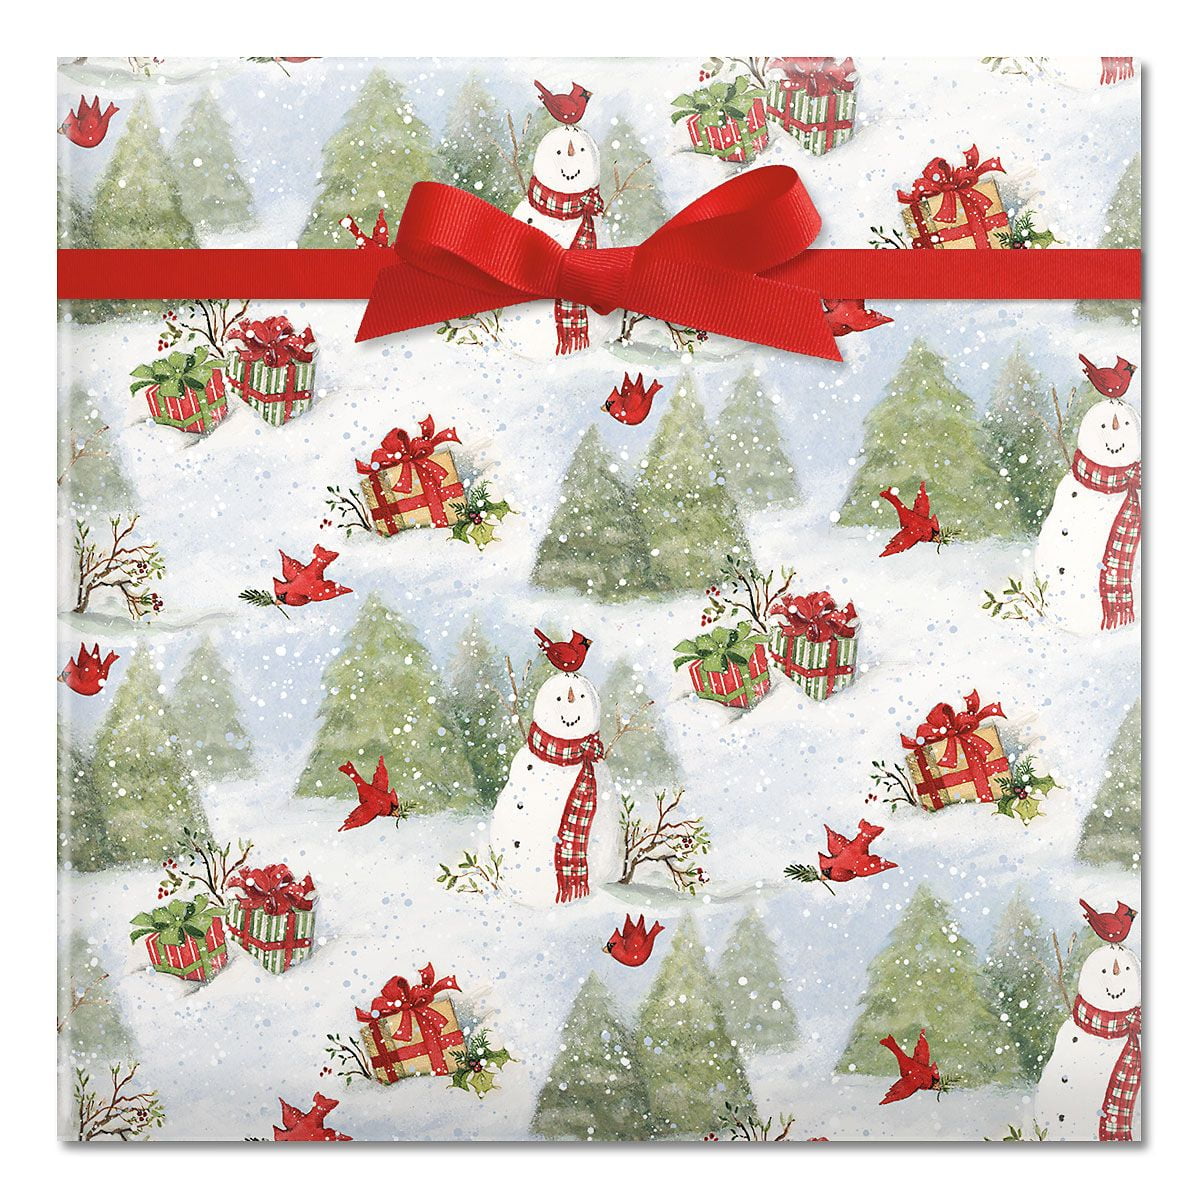 Christmas Gift Wrapping Tips and Printables - Jordecor